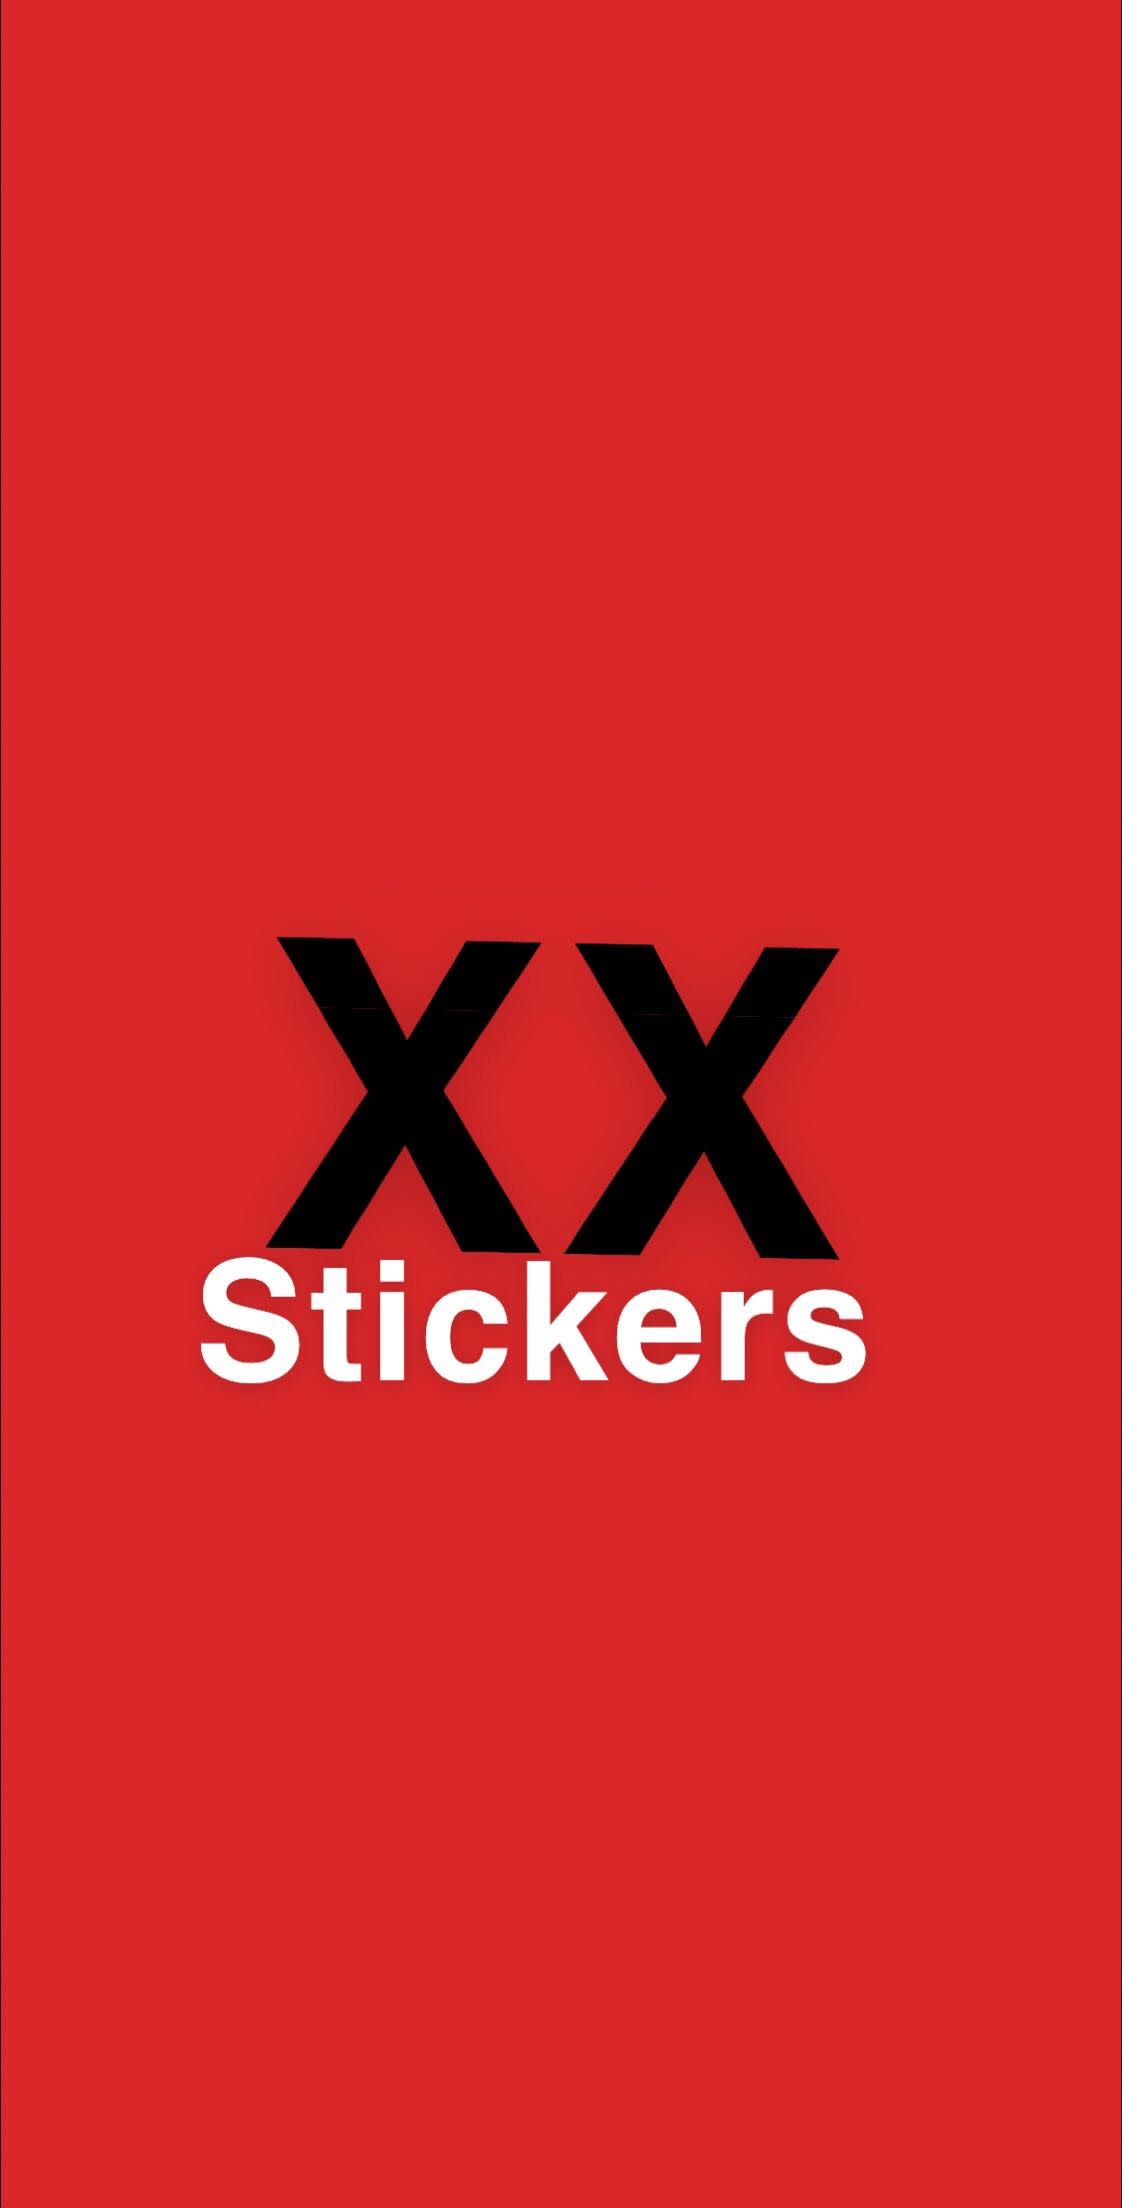 XX Stickers